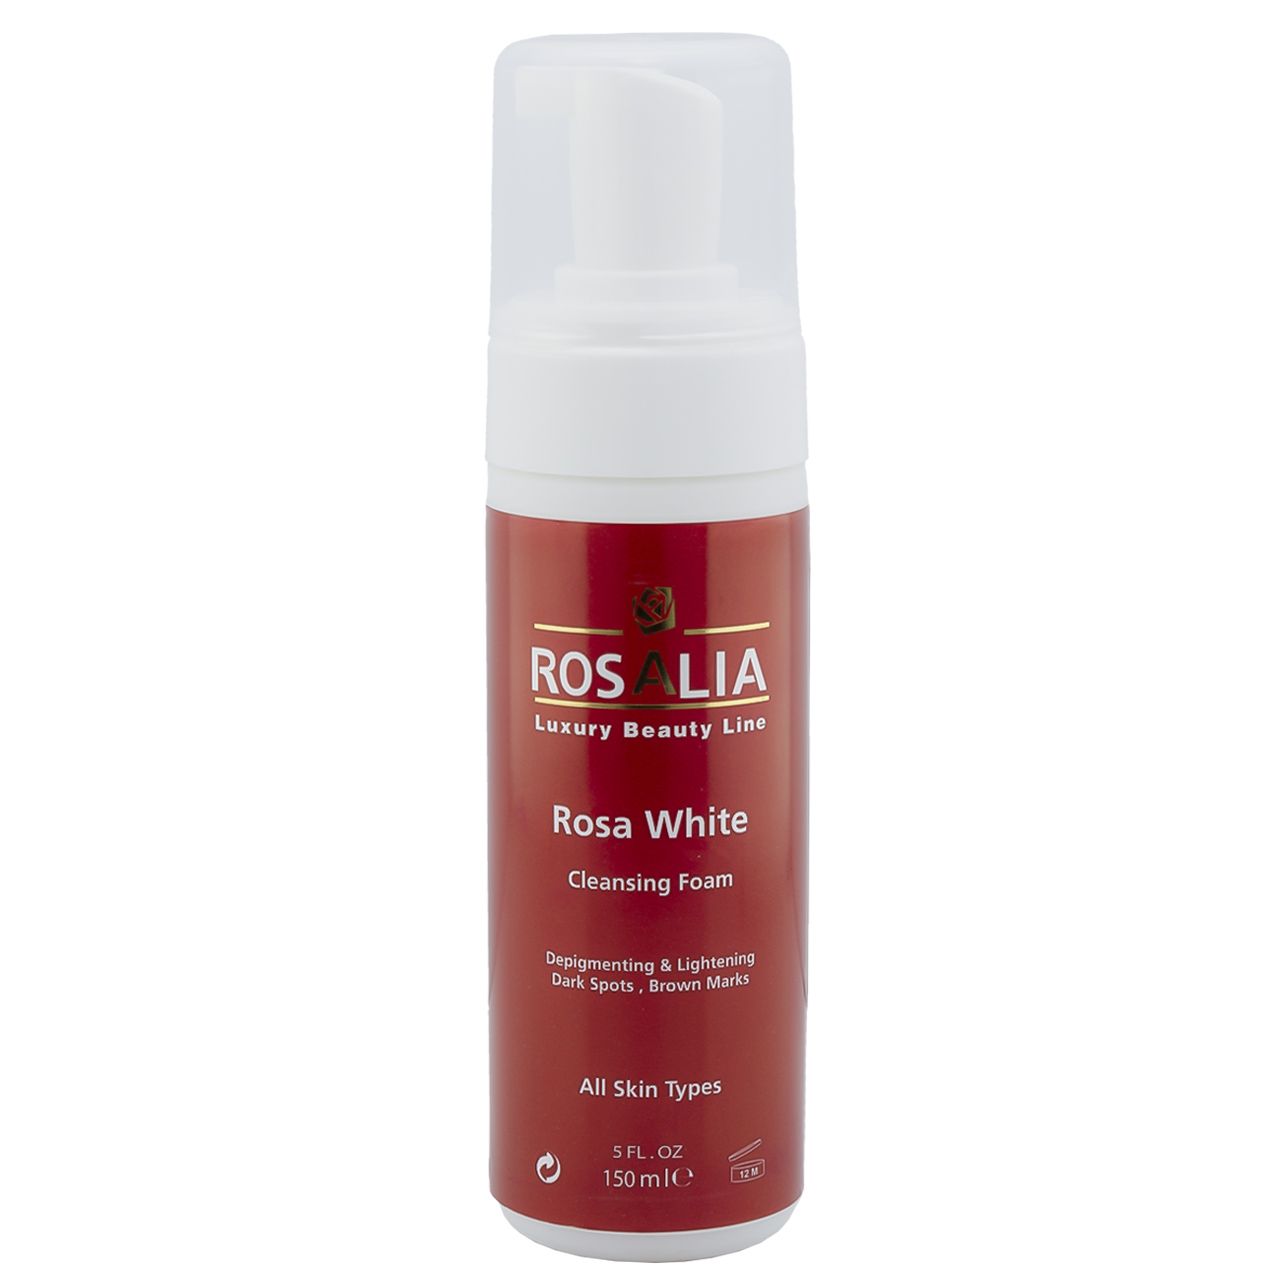 فوم پاک کننده و روشن کننده پوست رزالیا مدل Rosa White حجم 150 میلی لیتر -  - 1